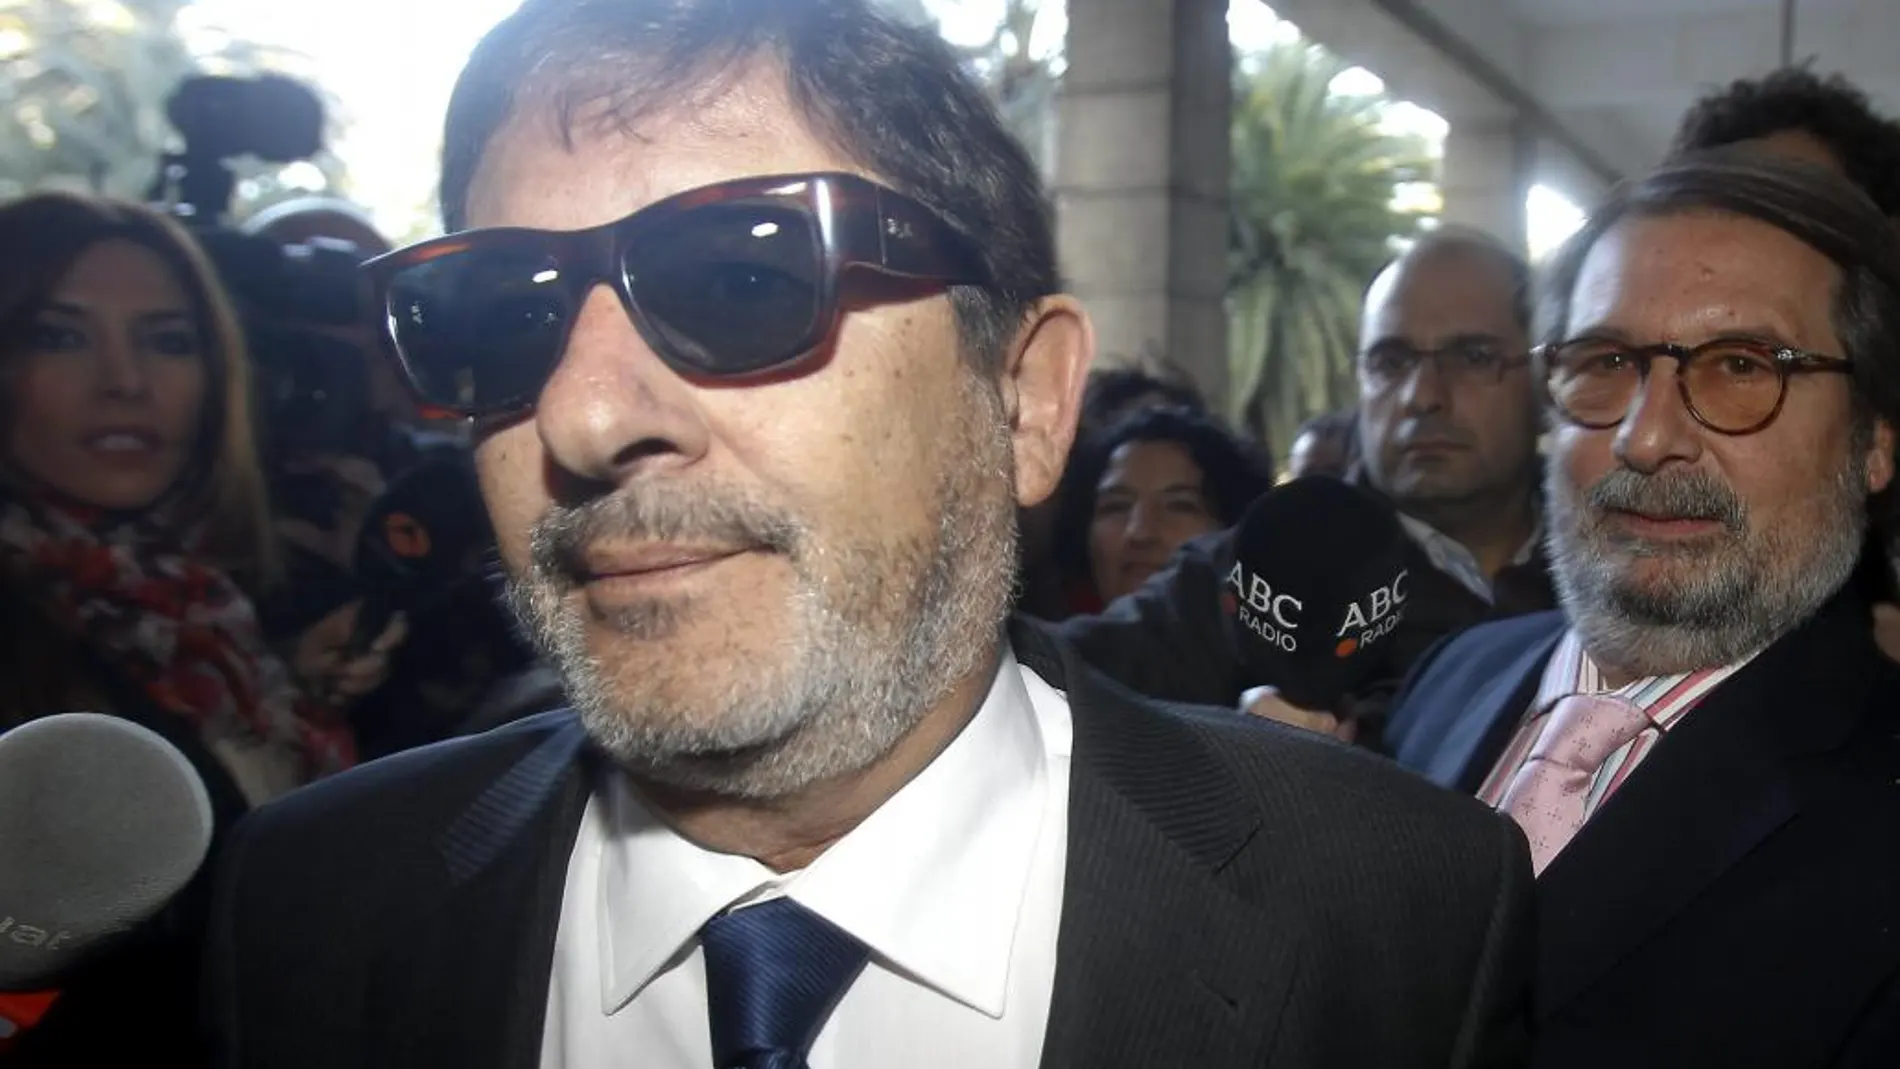 El exdirector general de Trabajo de la Junta de Andalucía, imputado en el caso de los ERE fraudulentos, Francisco Javier Guerrero